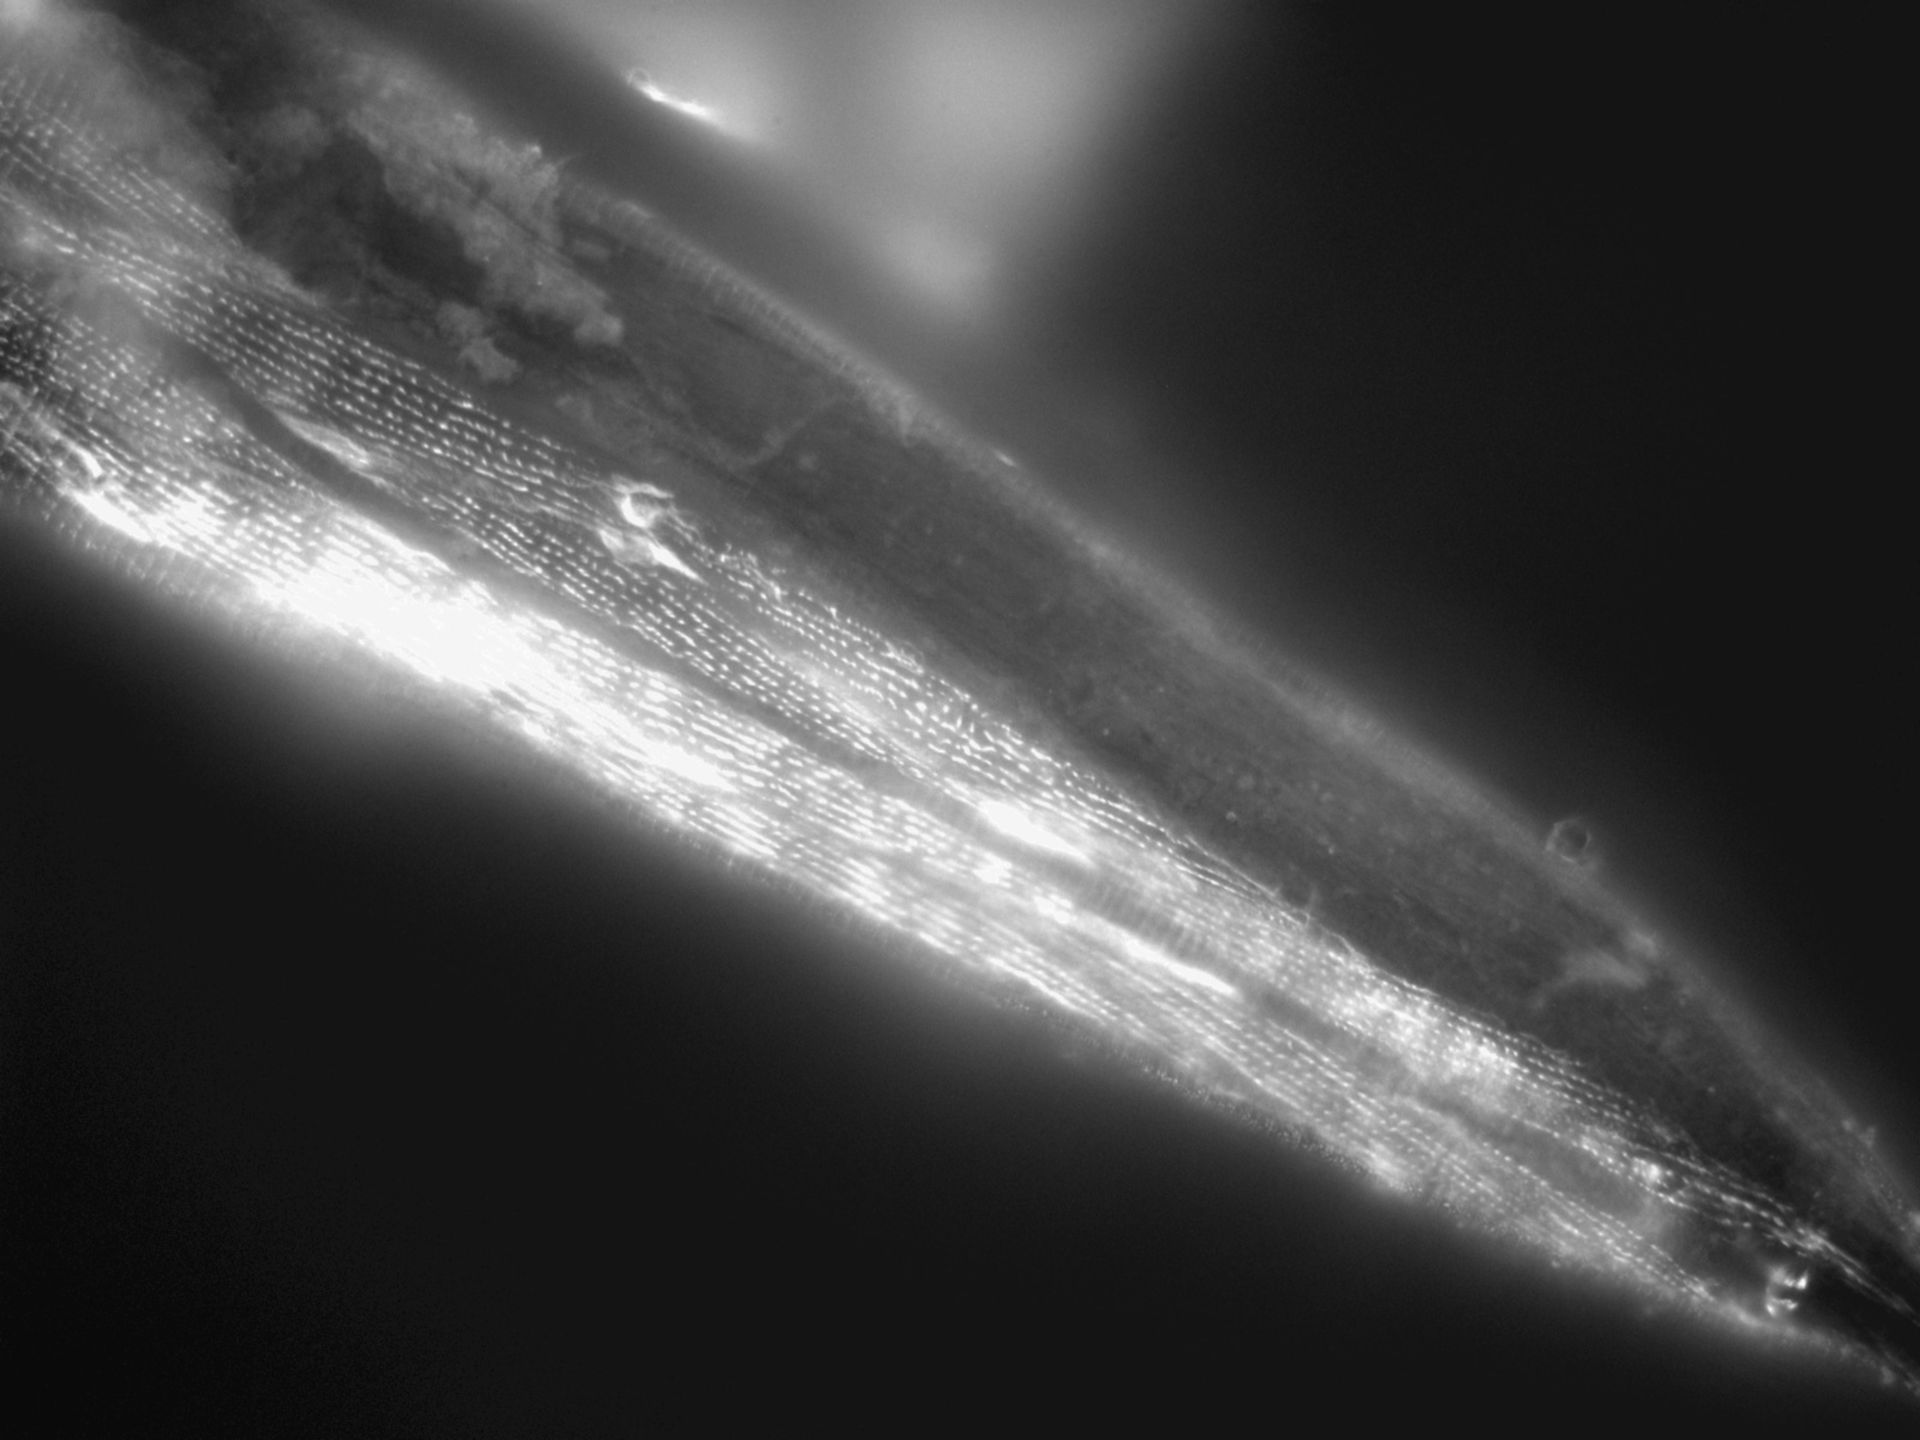 Caenorhabditis elegans (Actin filament) - CIL:1174